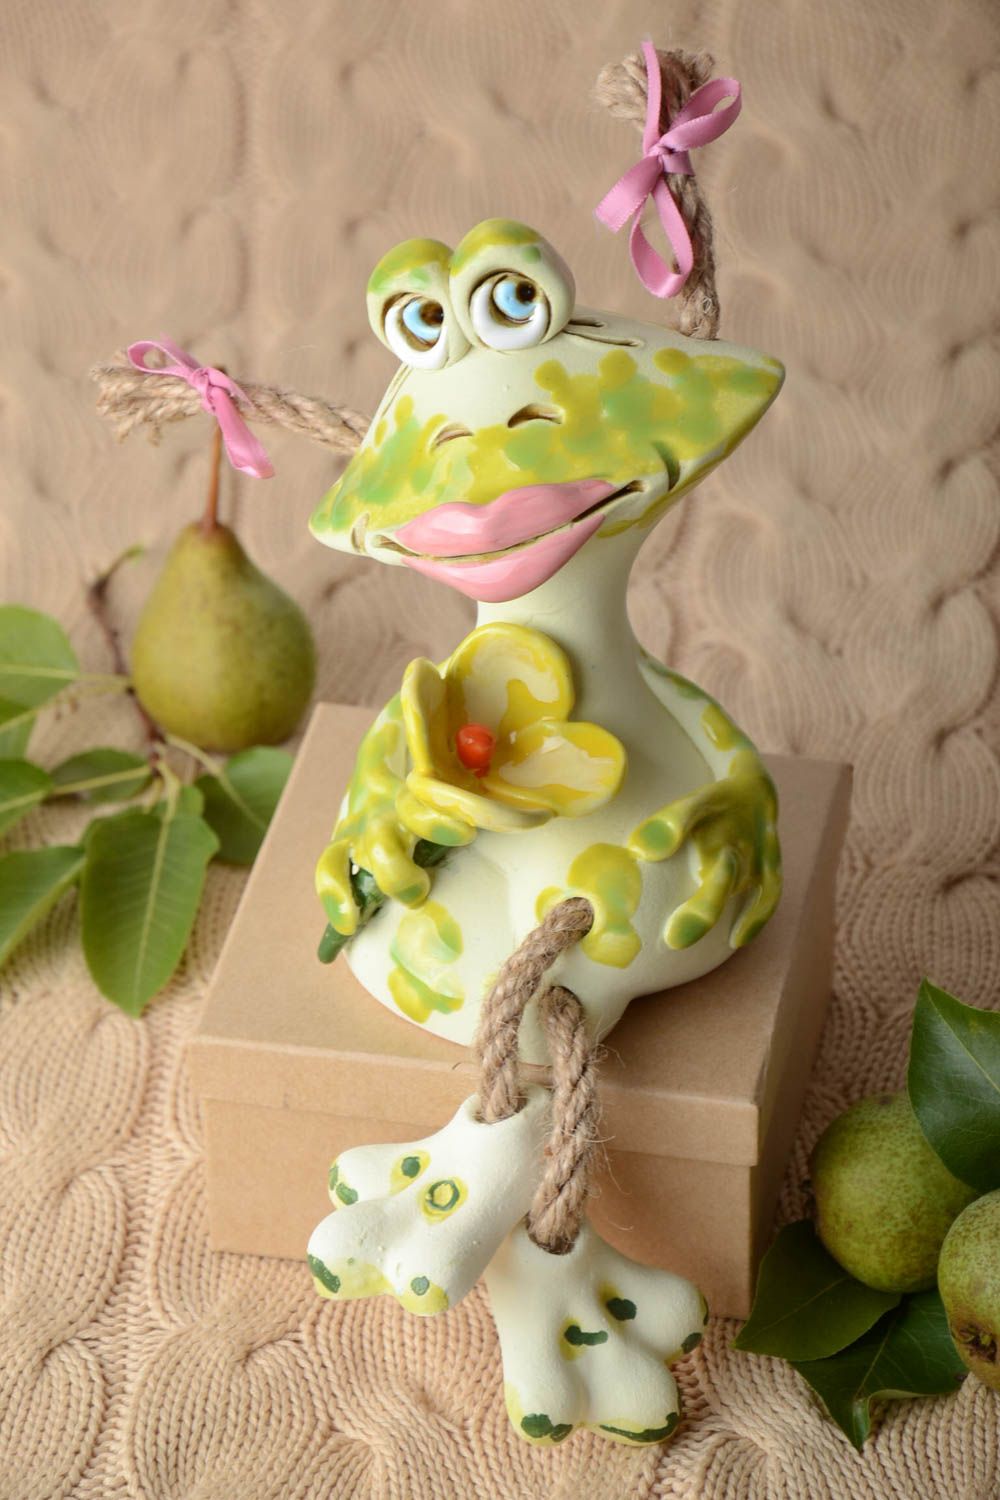 Keramik Handarbeit Spardose Frosch Geschenk Idee Haus Dekoration schön foto 1